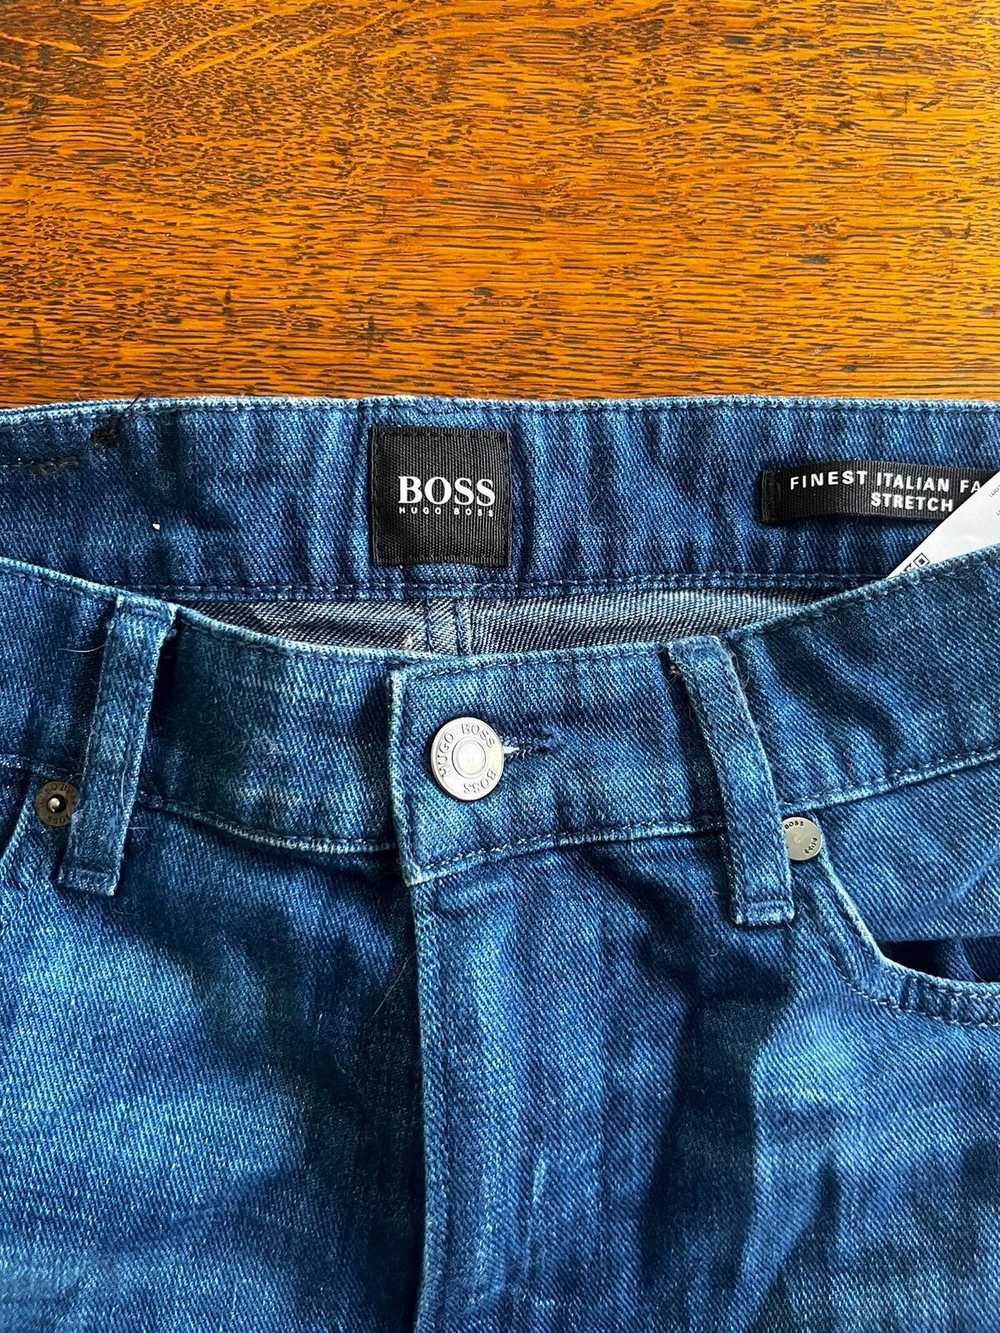 Hugo Boss Hugo Boss Jeans - image 3